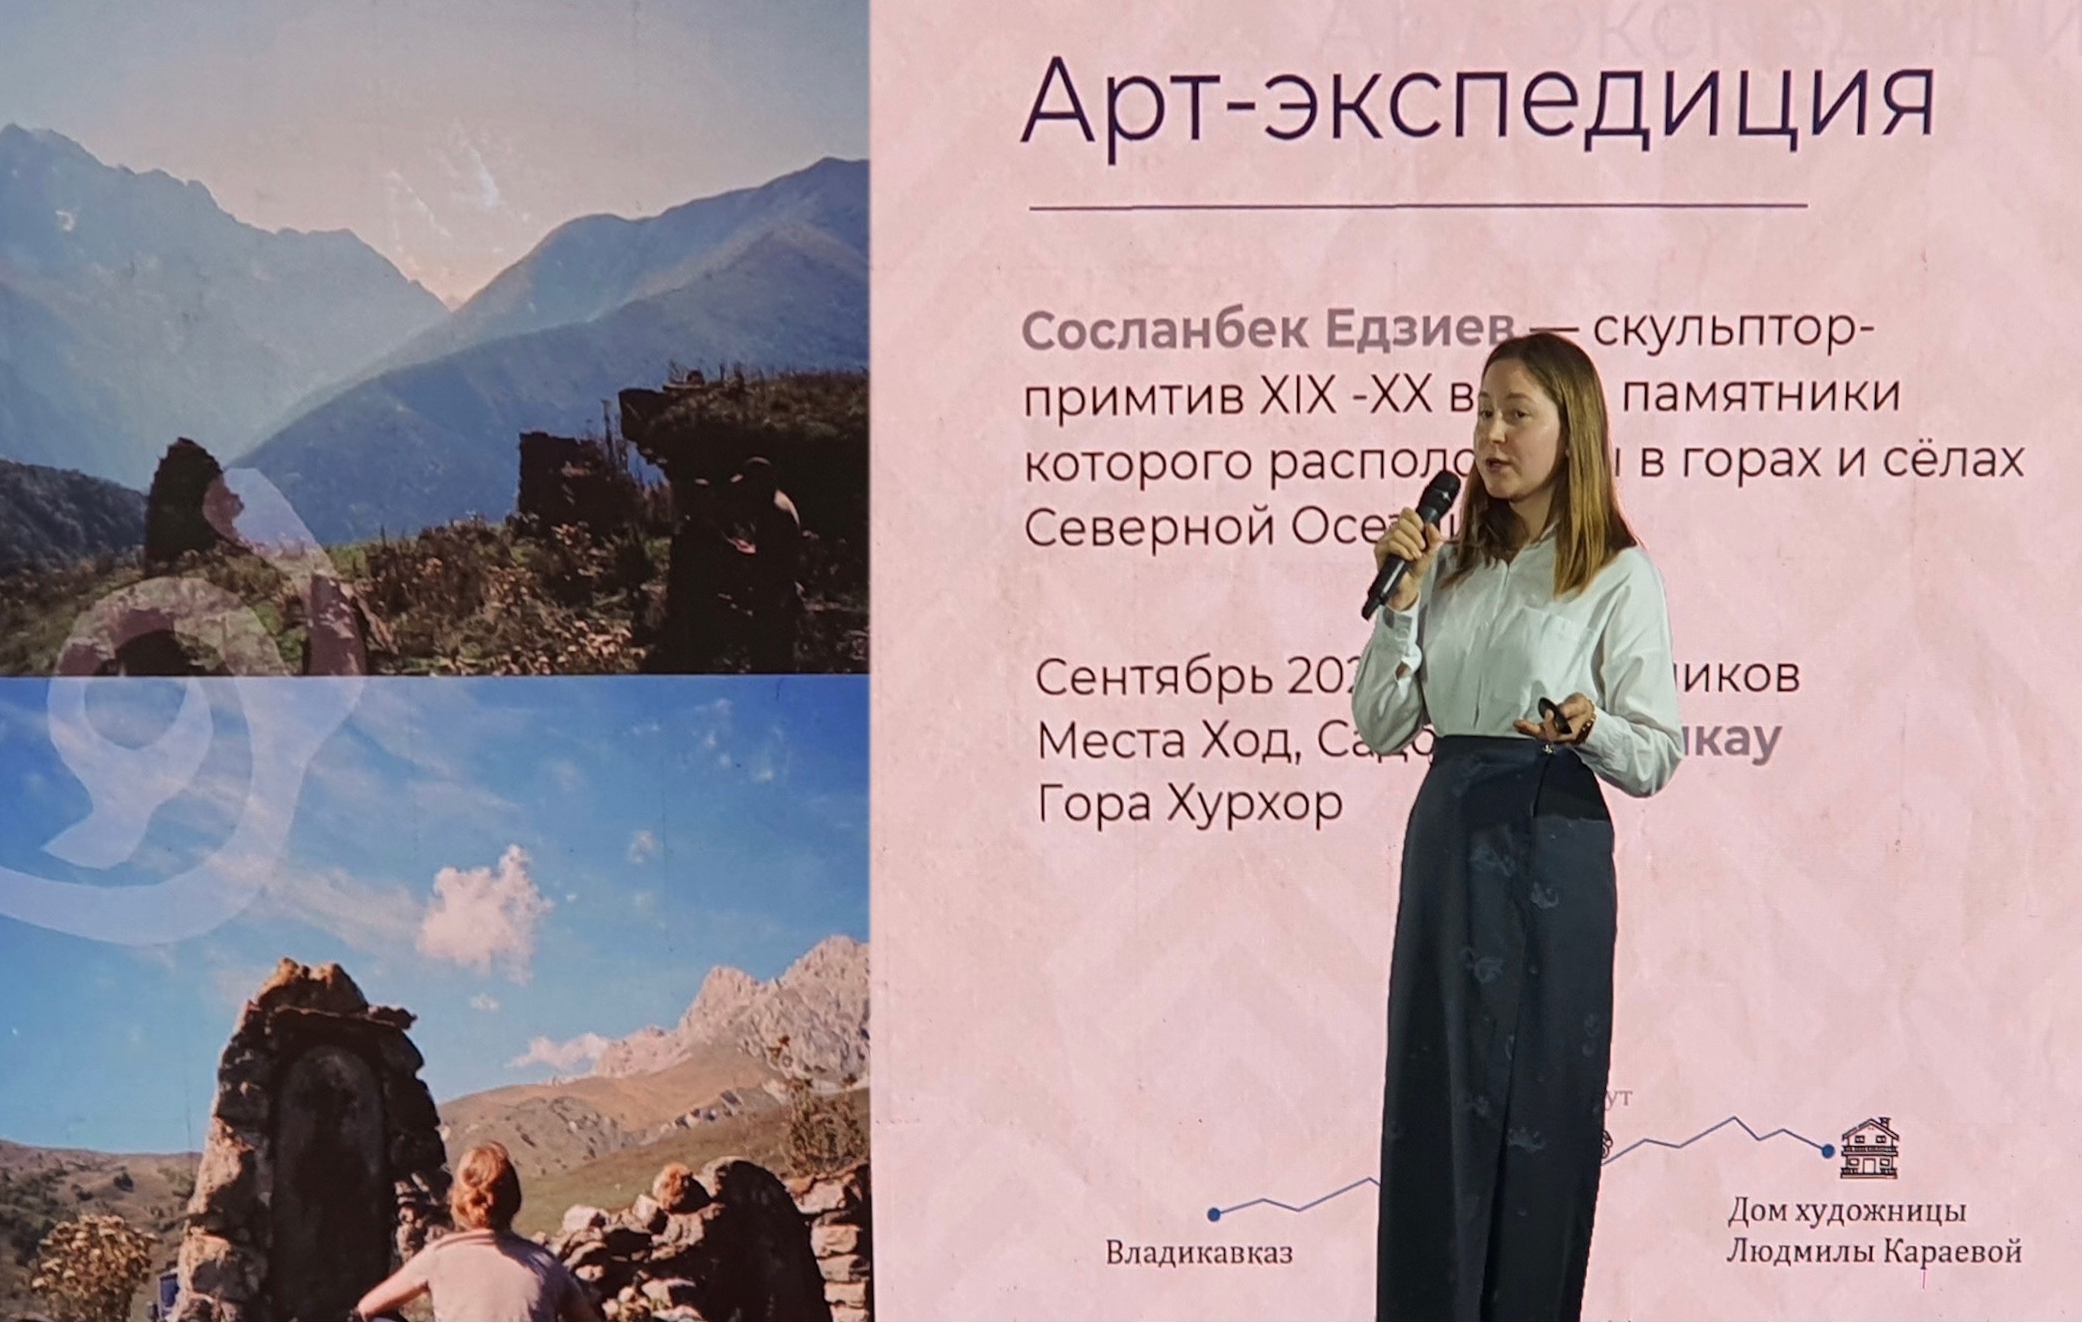 Студентка А. Максимова выступила с лекцией на мастер-классе "Презентация маршрутов для молодёжи по регионам России"